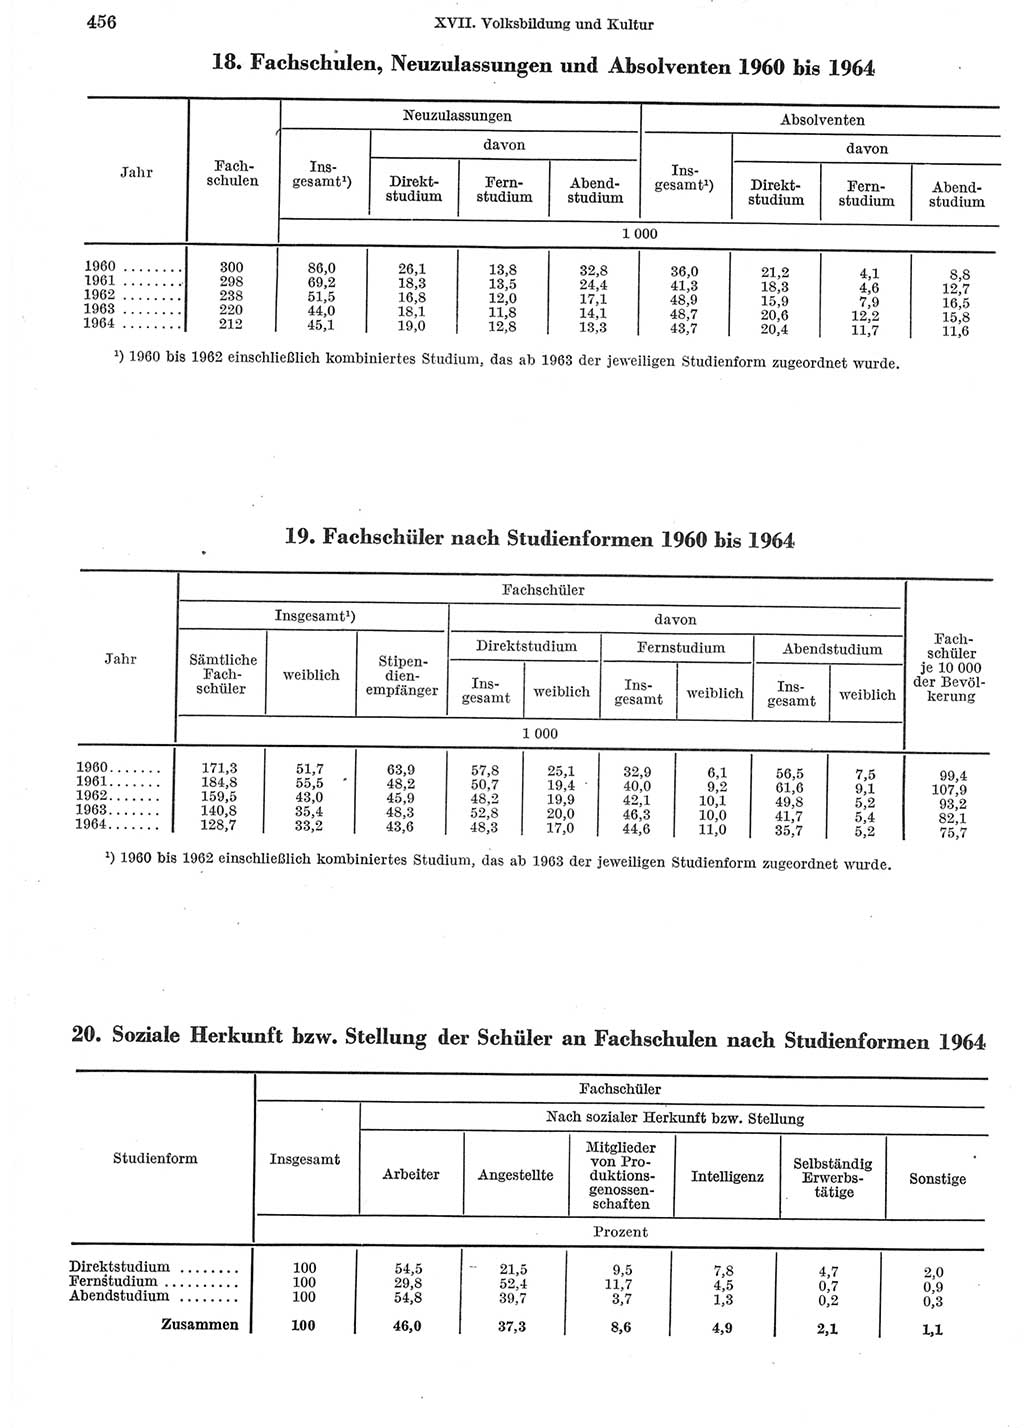 Statistisches Jahrbuch der Deutschen Demokratischen Republik (DDR) 1965, Seite 456 (Stat. Jb. DDR 1965, S. 456)